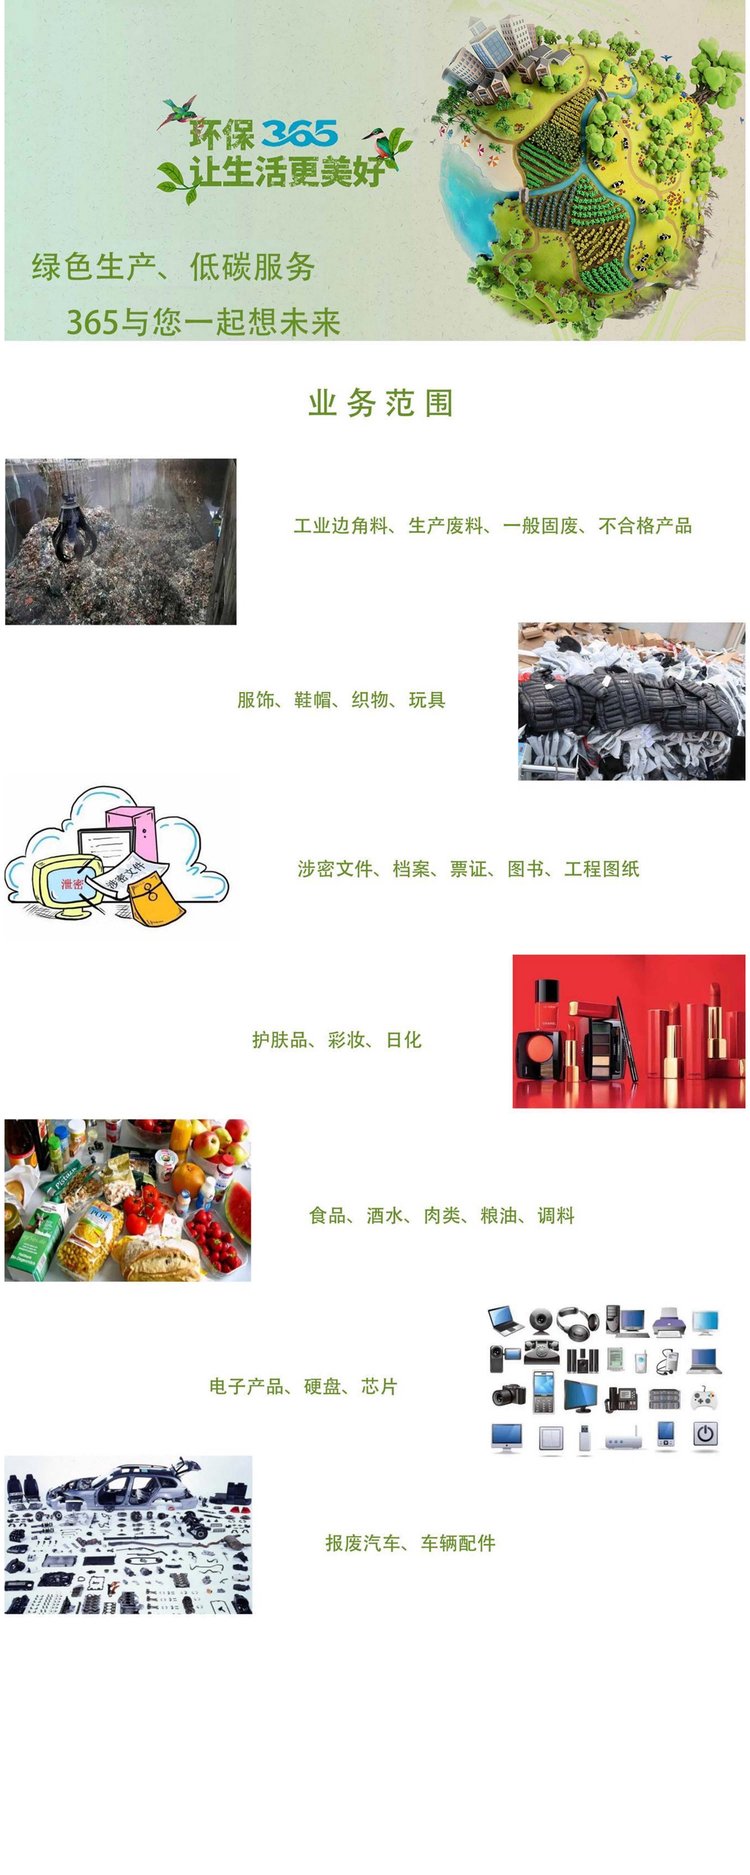 深圳福田区废弃产品销毁处置报废机构当日现场焚烧完成